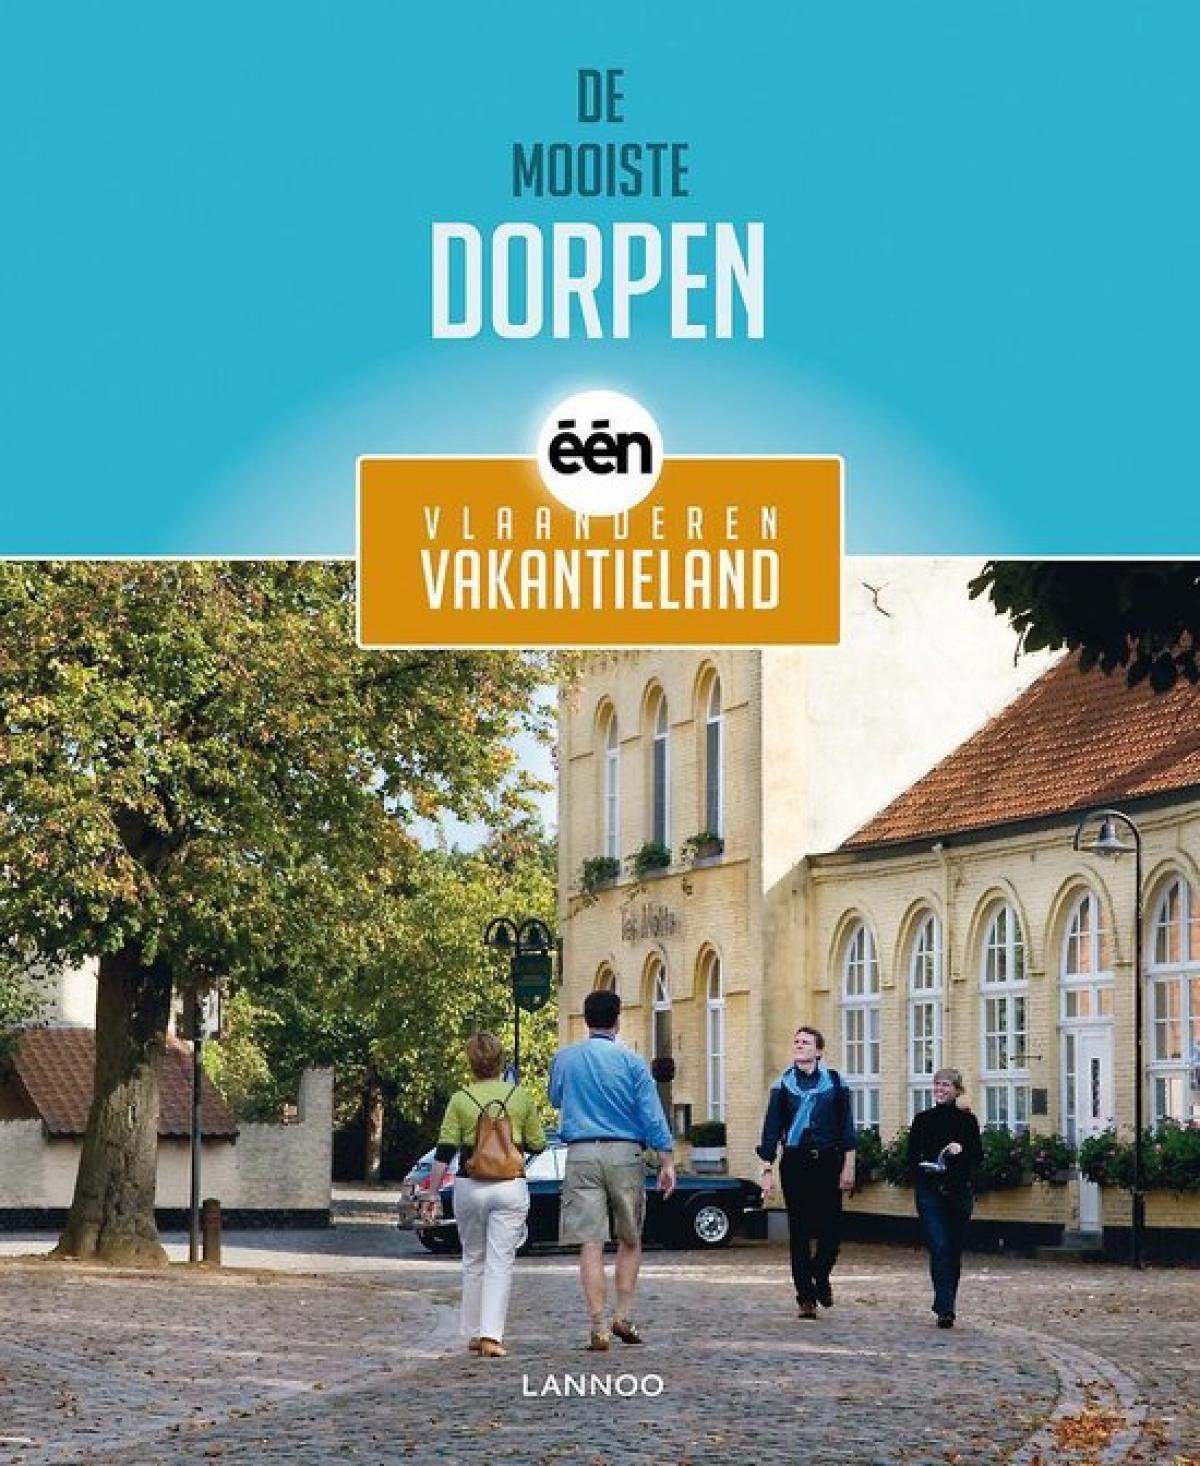 De mooiste dorpen - Vlaanderen Vakantieland